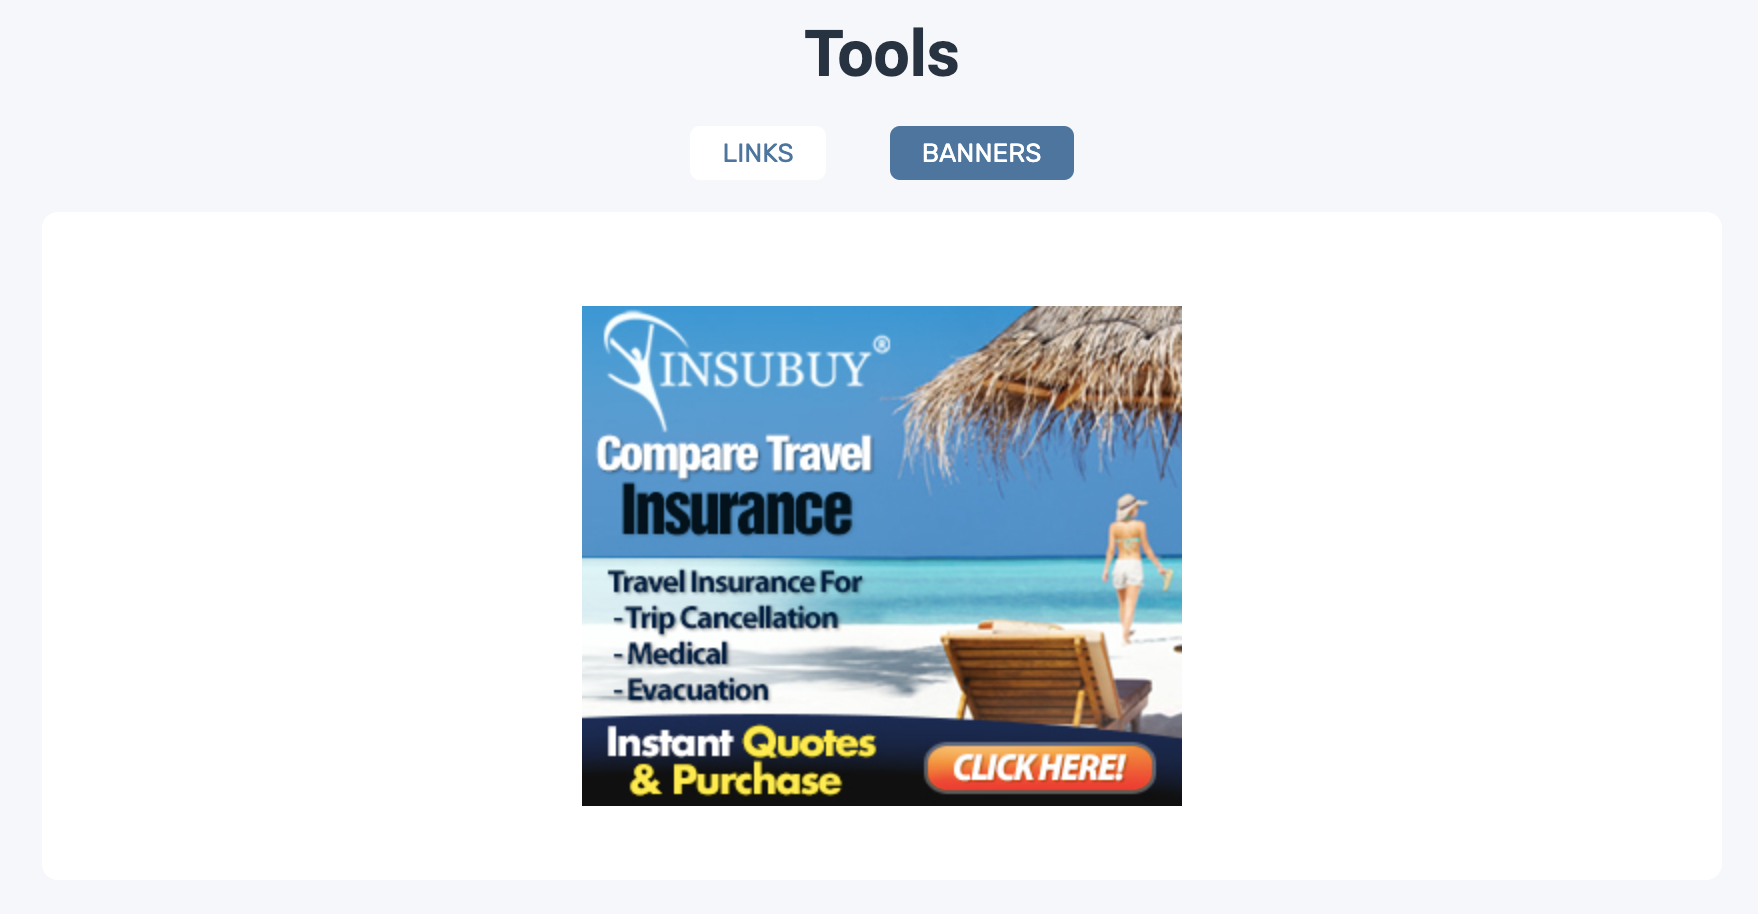 لقطة شاشة للصفحة المقصودة لبرنامج شريك Insubuy ، تعرض الكتلة مع أدوات الترويج (لافتات على وجه التحديد).